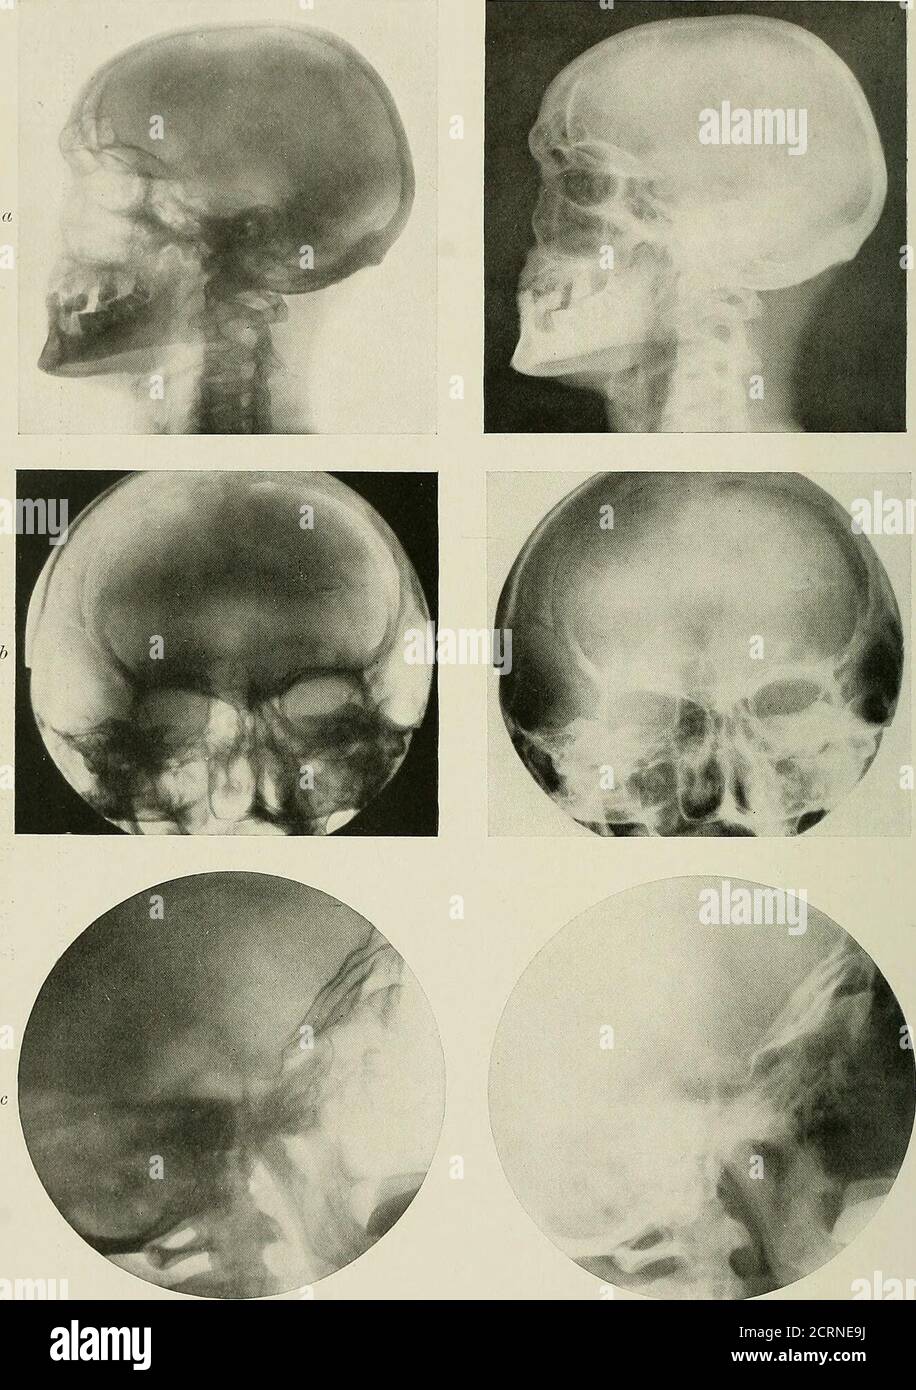 Radiografía y radioterapéutica . O ca a &lt;. PLACA XV—Skdlls normales. A,  Vista lateral del cráneo normal, mostrando senos frontales, senos  esfenoidales, silla turca, huesos temporales, vértebras cervicales, b,  Vista antero-posterior